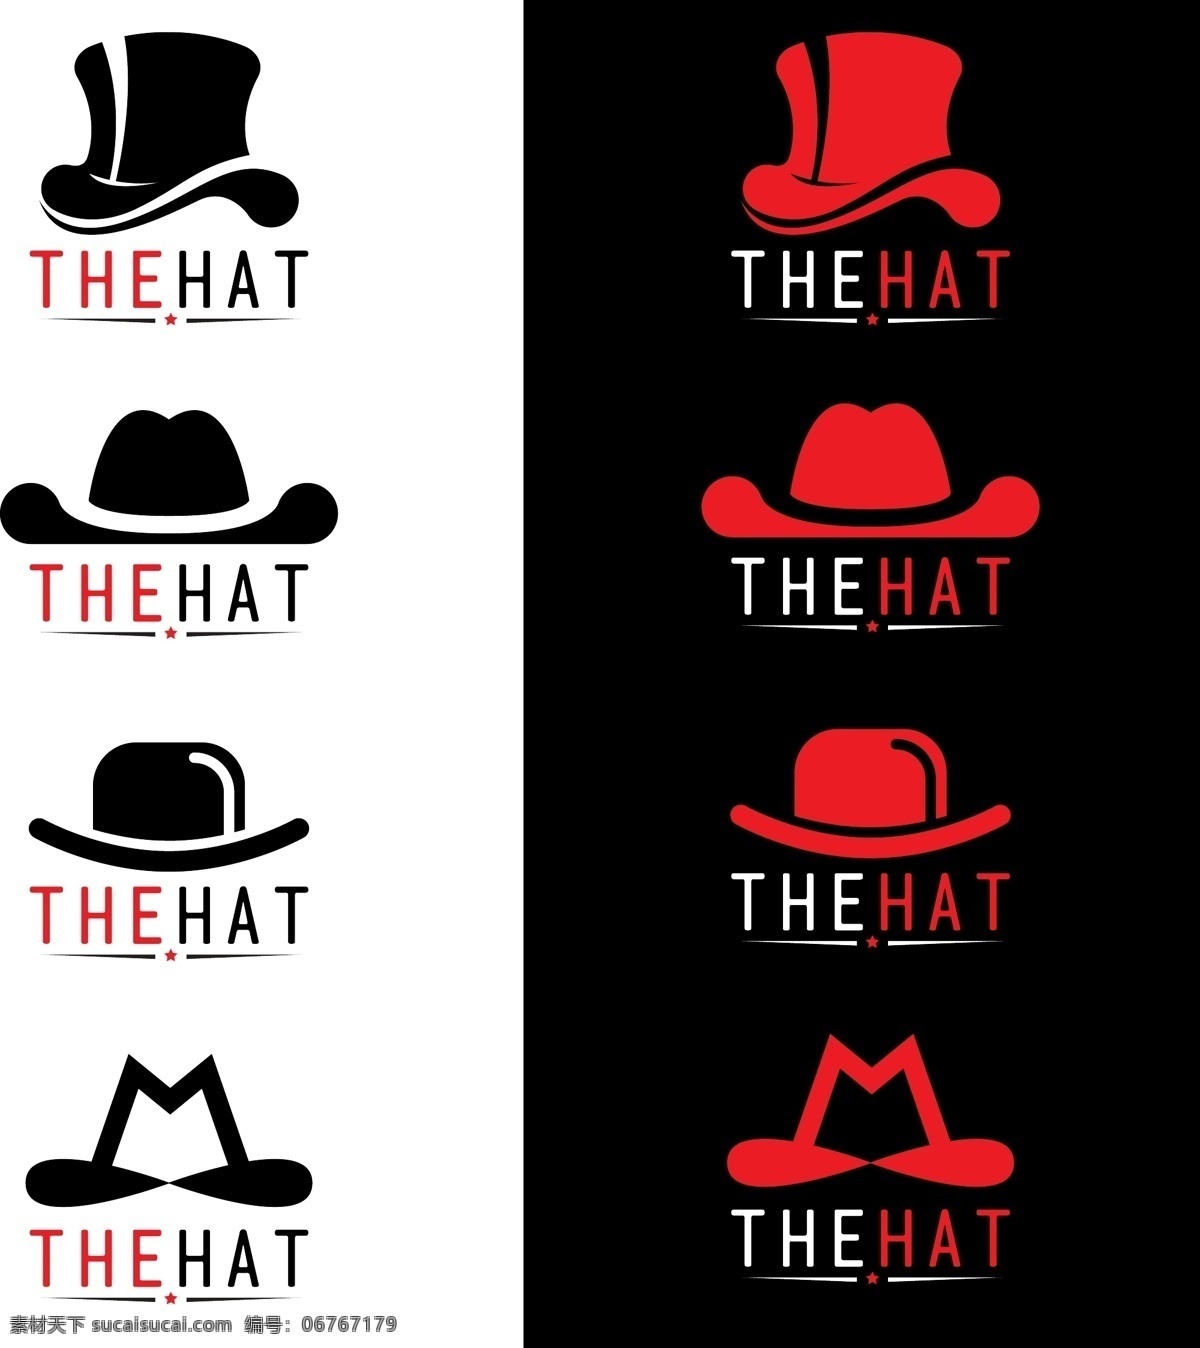 帽子logo 帽子图标 矢量帽子 卡通帽子 手绘帽子 帽子插画 帽子剪影 时尚帽子 现代帽子 帽子集合 帽子设计 帽子形状 帽子图案 图标标签标志 标志图标 其他图标